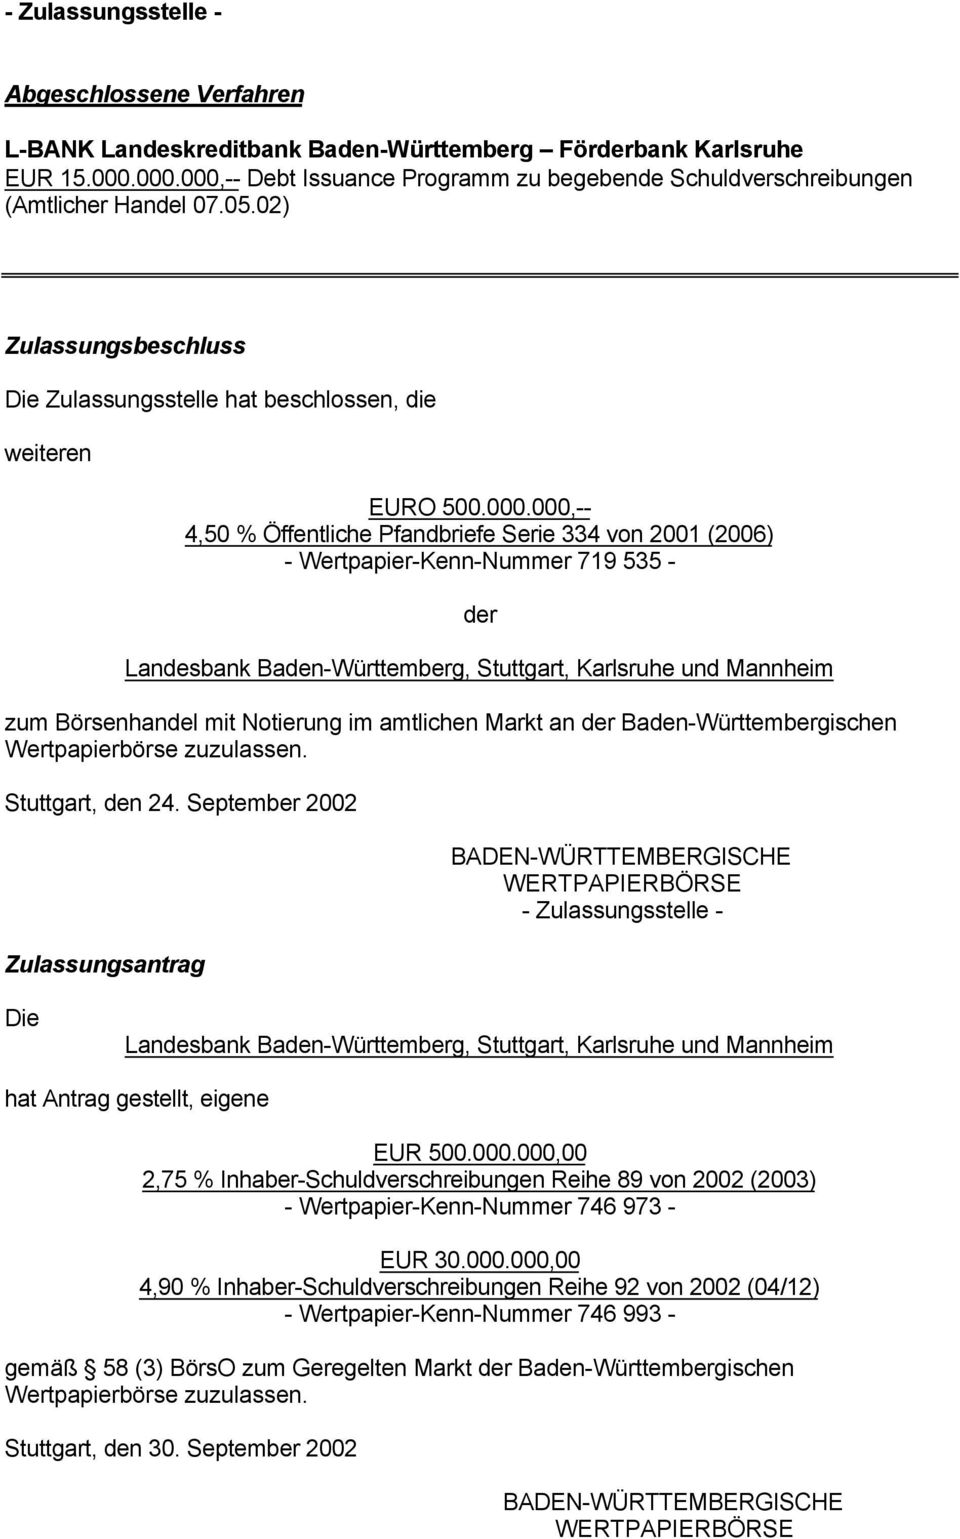 Öffentliche Pfandbriefe Serie 334 von 2001 (2006) - Wertpapier-Kenn-Nummer 719 535 - Landesbank Baden-Württemberg, Stuttgart, Karlsruhe und Mannheim zum Börsenhandel mit Notierung im amtlichen Markt